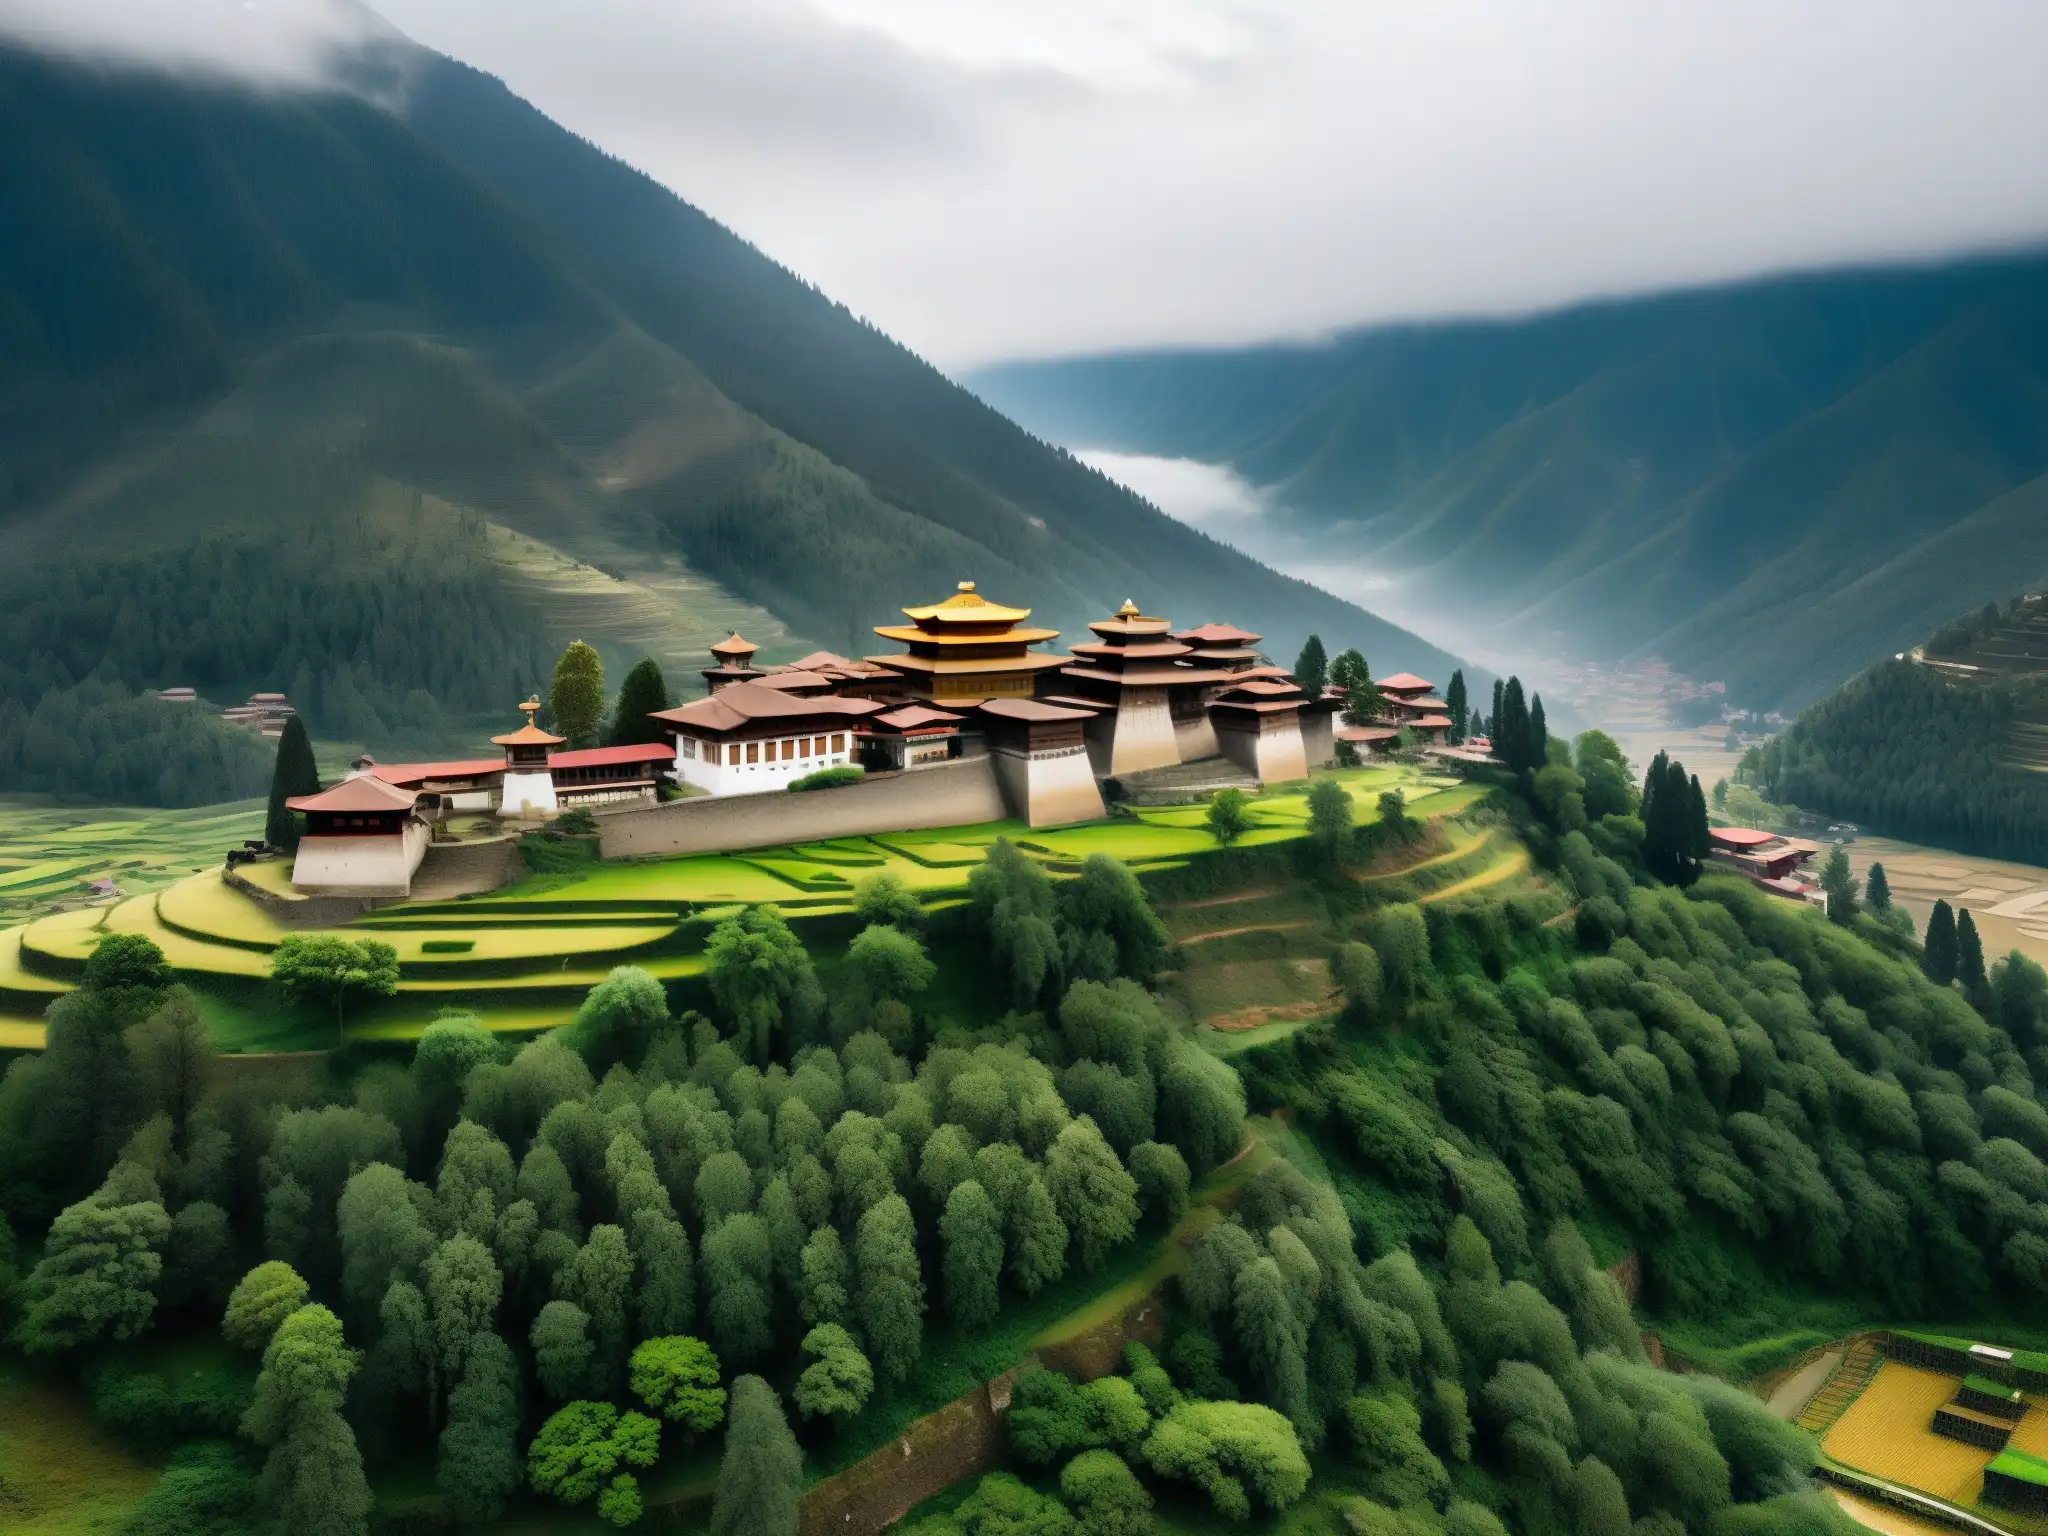 La Ciudad Fantasma de Thimphu en Bhután emerge entre la niebla, revelando su misteriosa y melancólica belleza